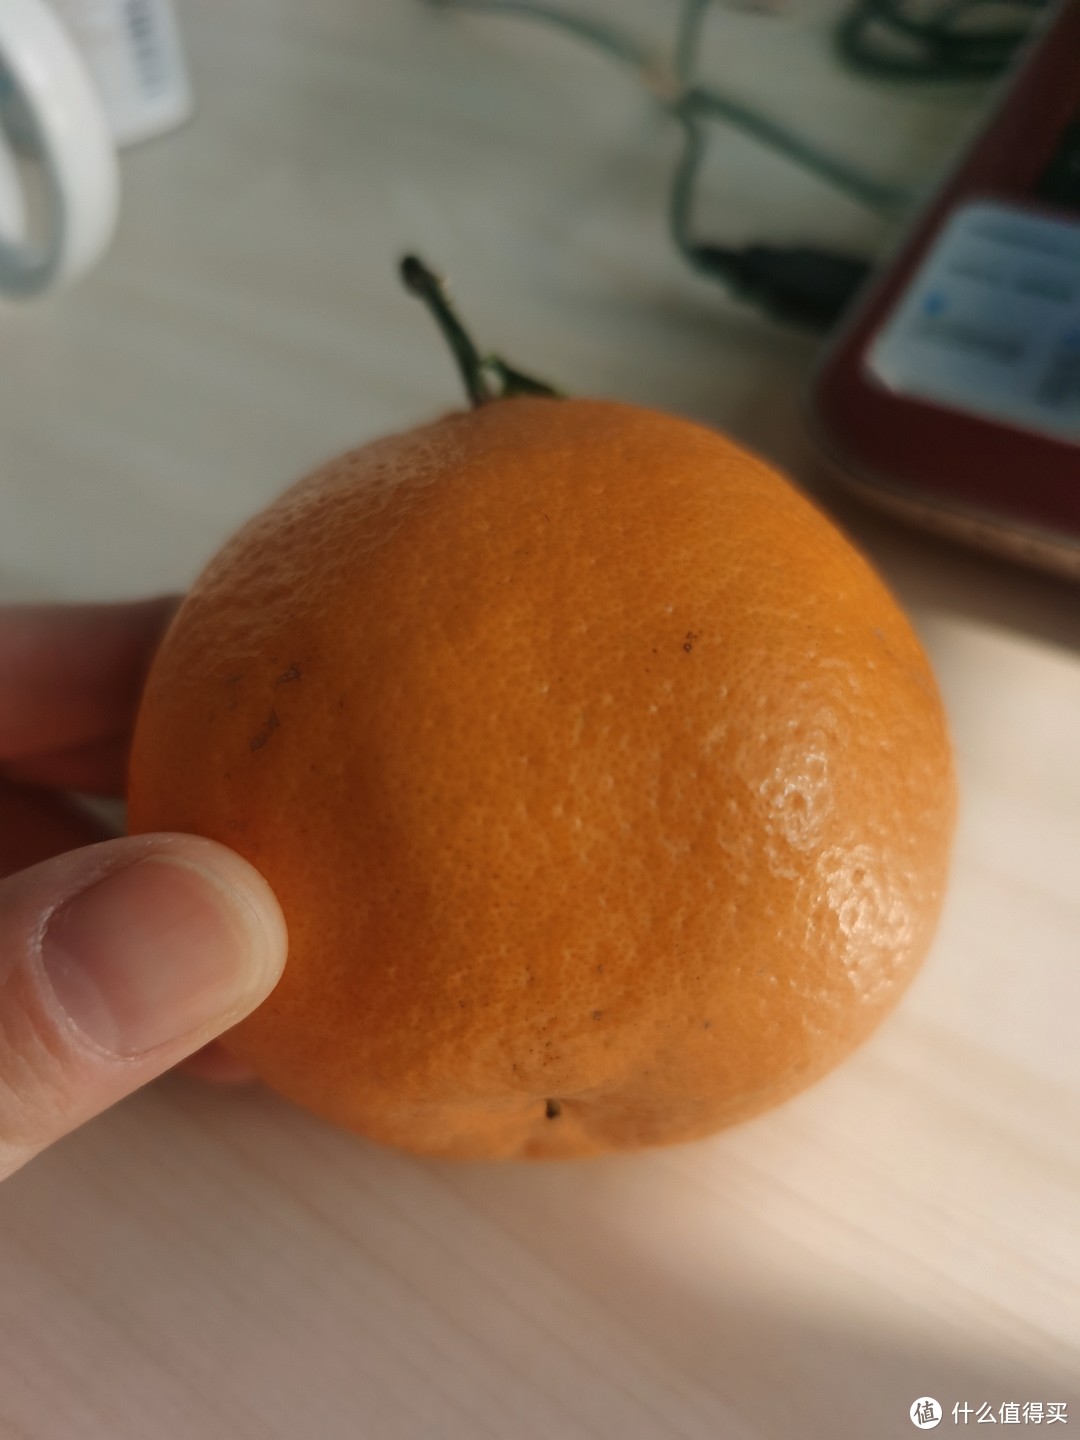 维生素C丰富的丑橘又甜皮又薄